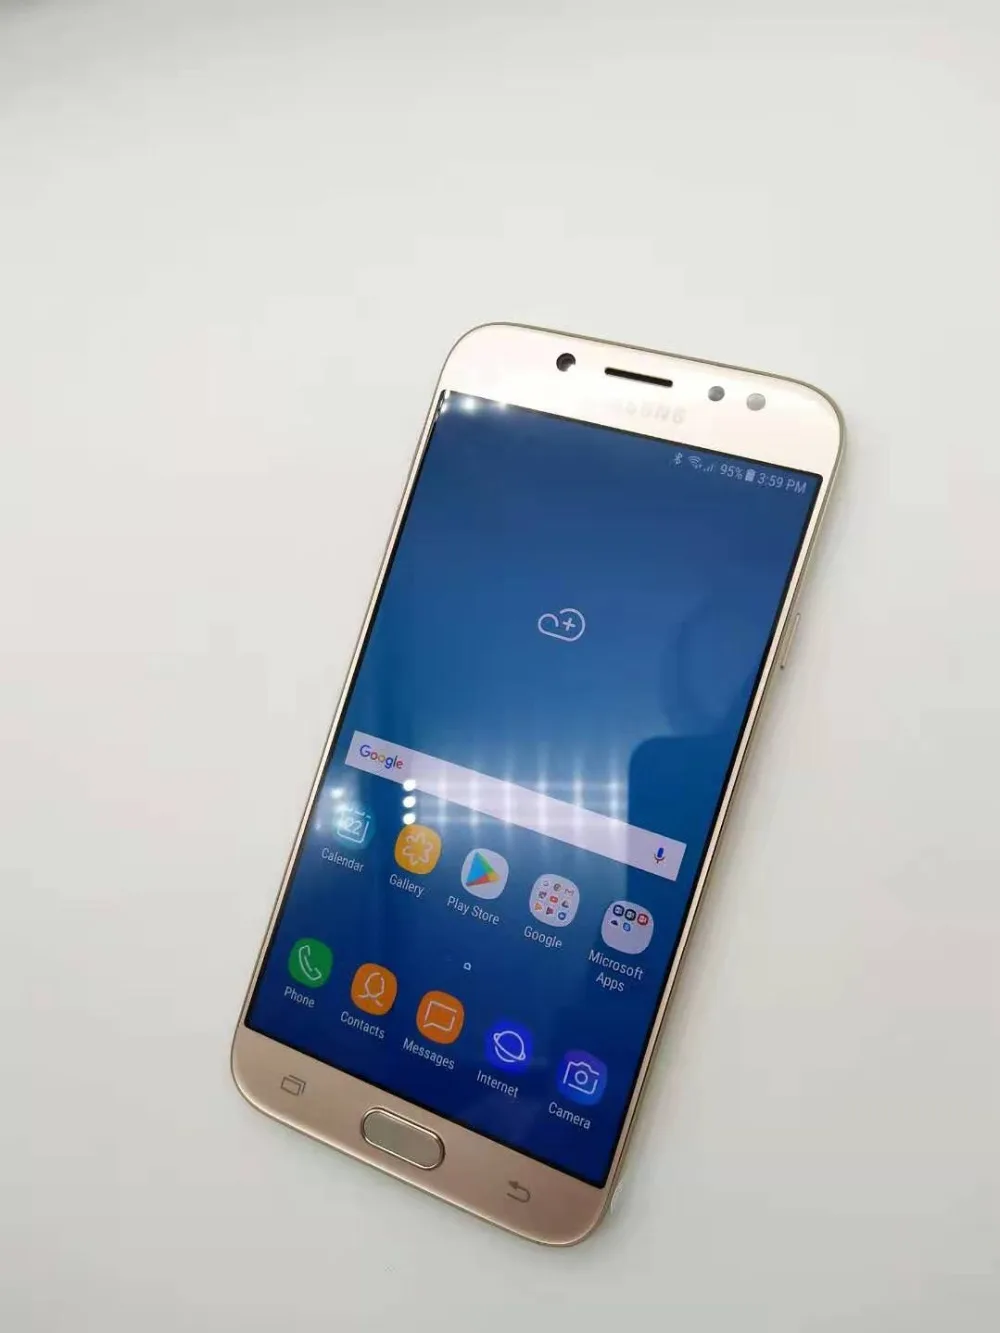 samsung Galaxy J7 Pro, разблокированный, GSM, 4G, LTE, Android, мобильный телефон, четыре ядра, две sim-карты, 5,5 дюймов, 13 МП, 3 Гб+ 16 ГБ, отремонтированный